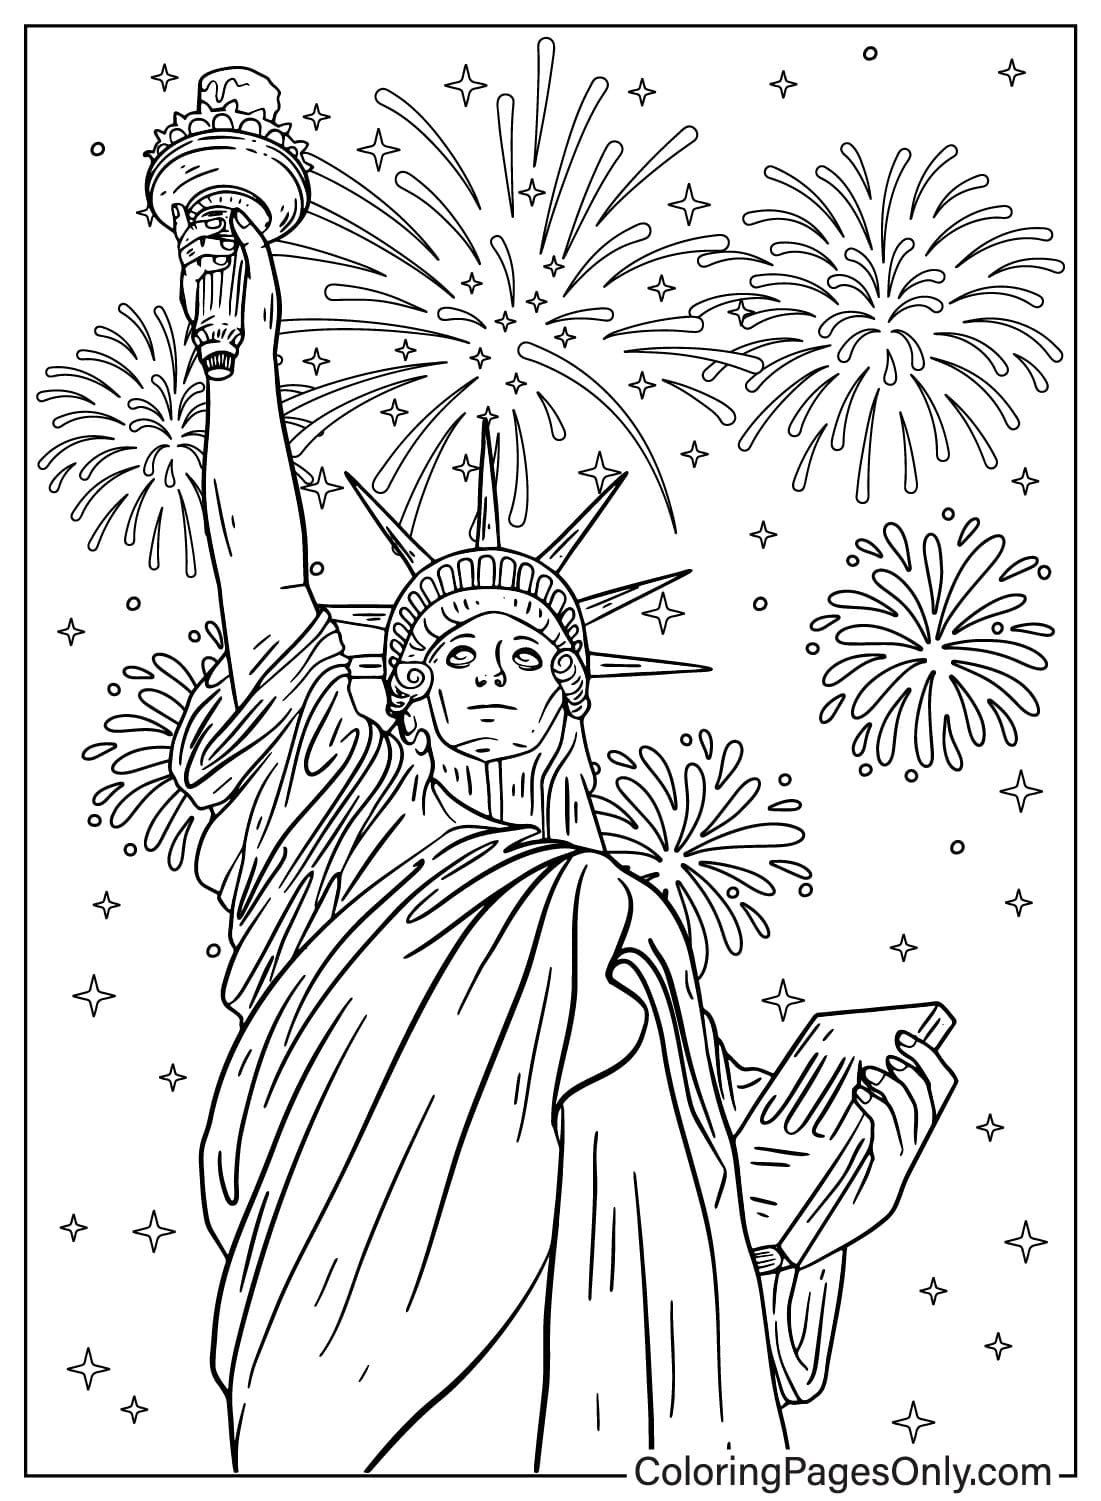 Página para colorir da Estátua da Liberdade e fogos de artifício da Estátua da Liberdade